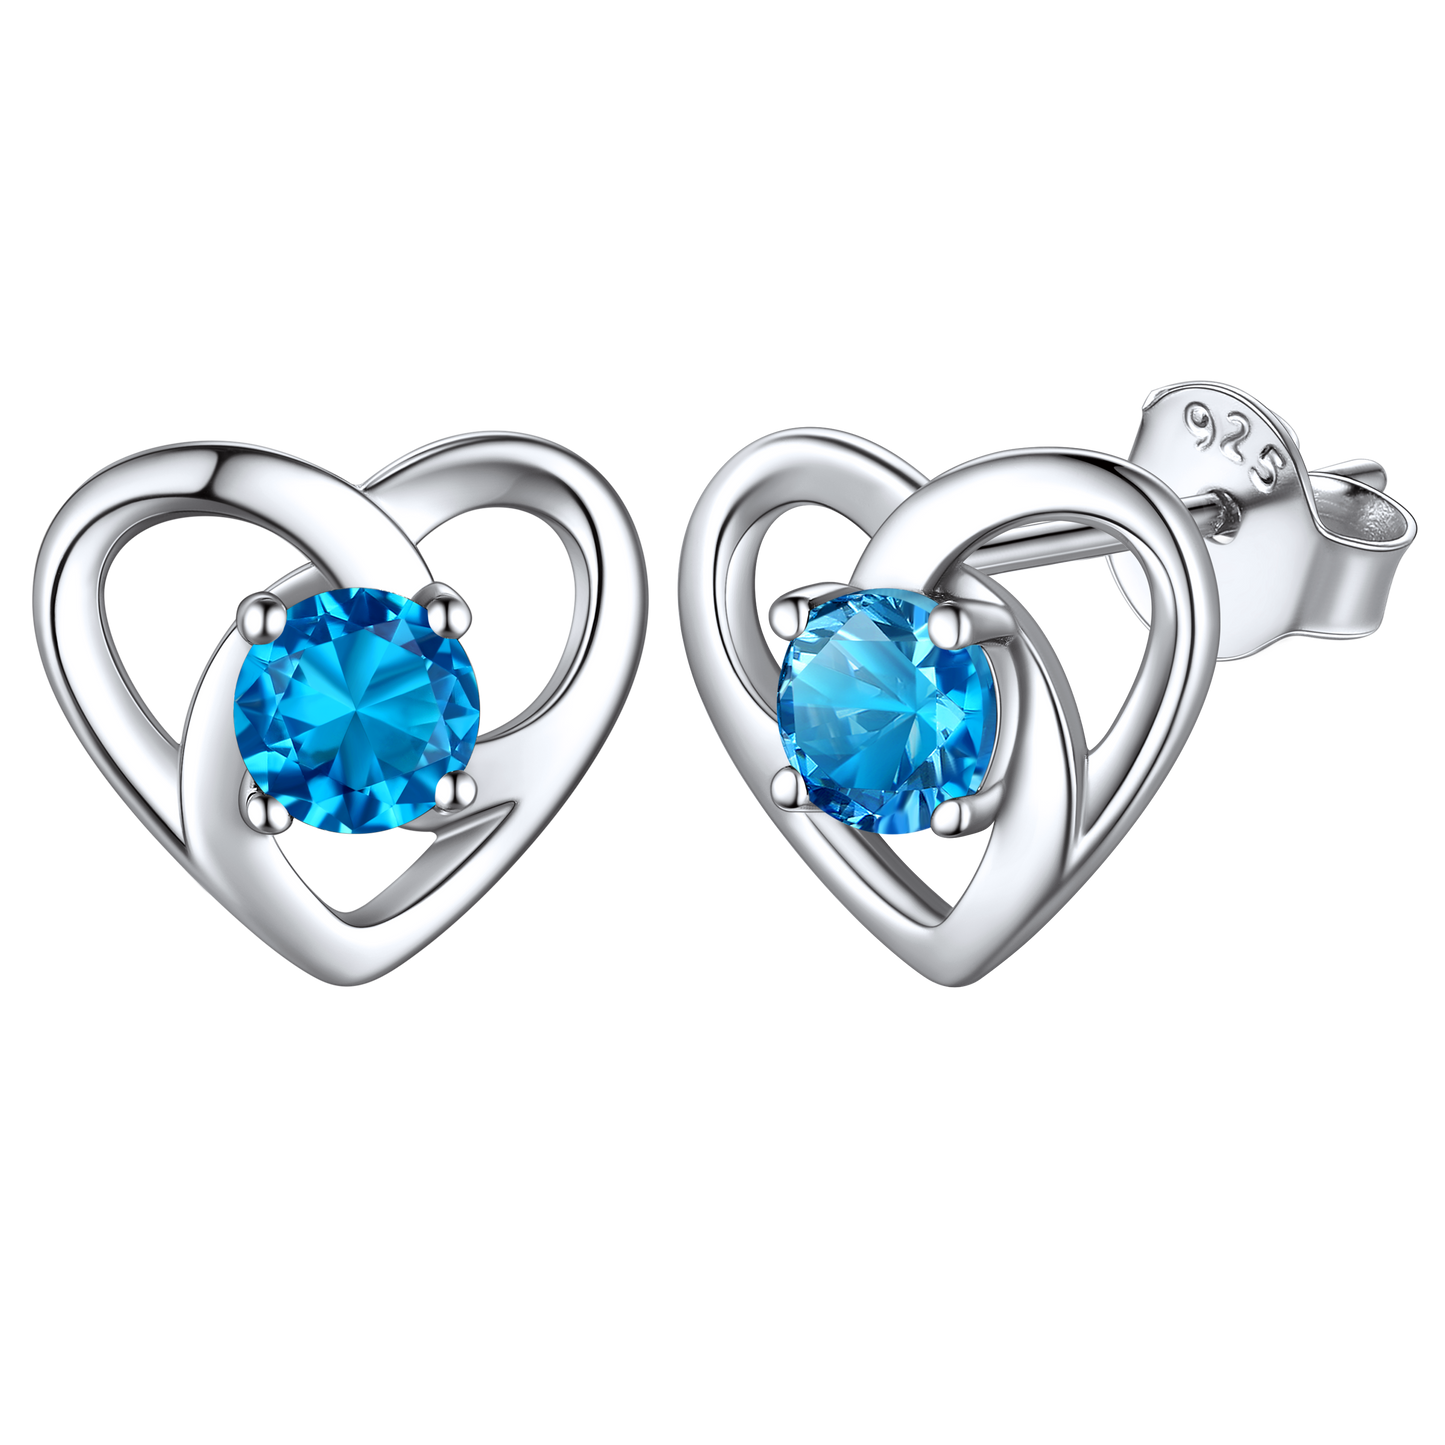 Sterling Silver Heart Celtic Knot Birthstone Stud Earrings